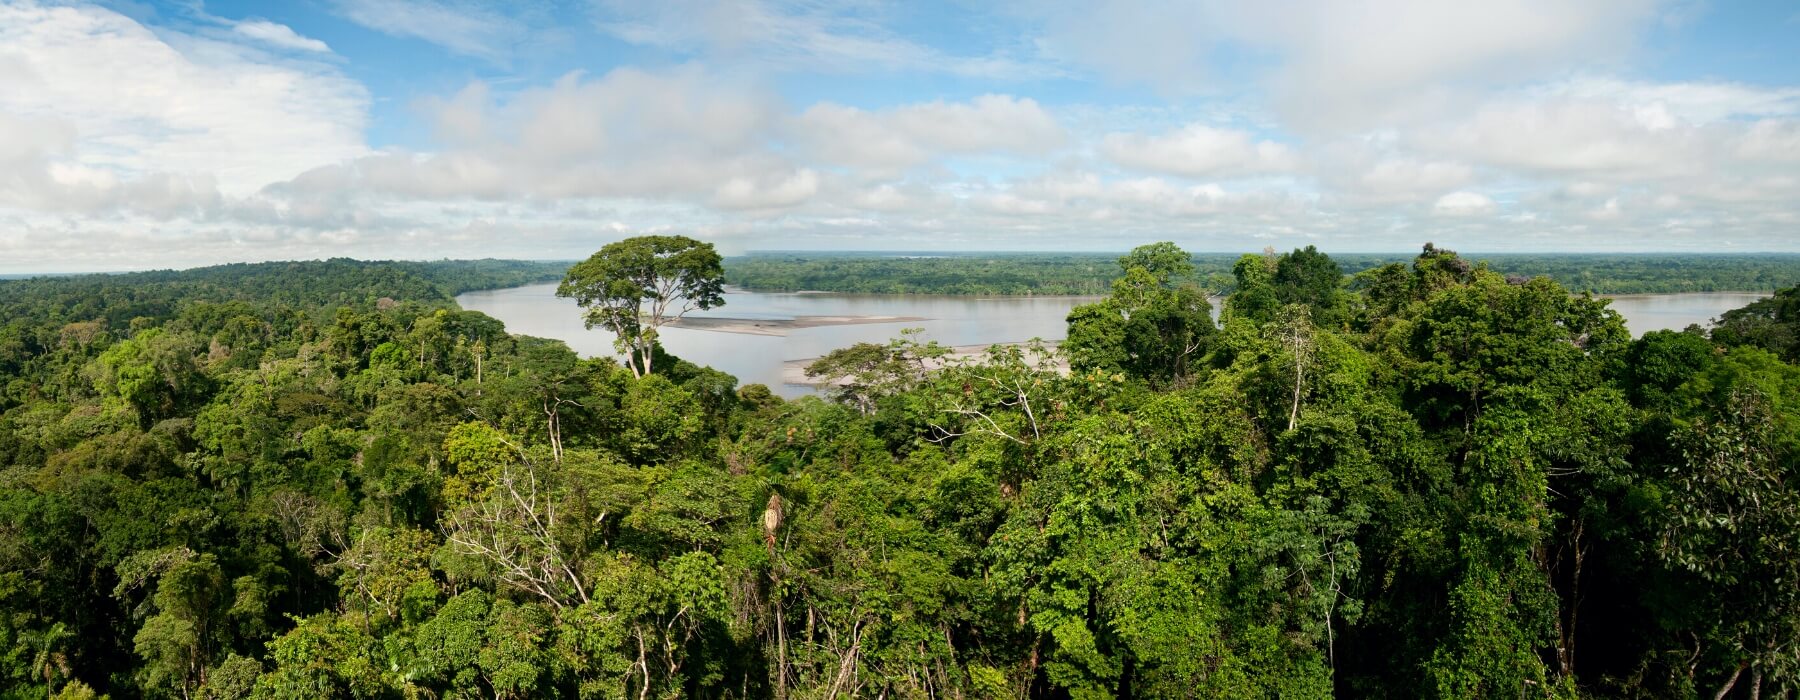 LES MEILLEURES DESTINATIONS TOURISTIQUES DE L’AMAZONIE PÉRUVIENNE